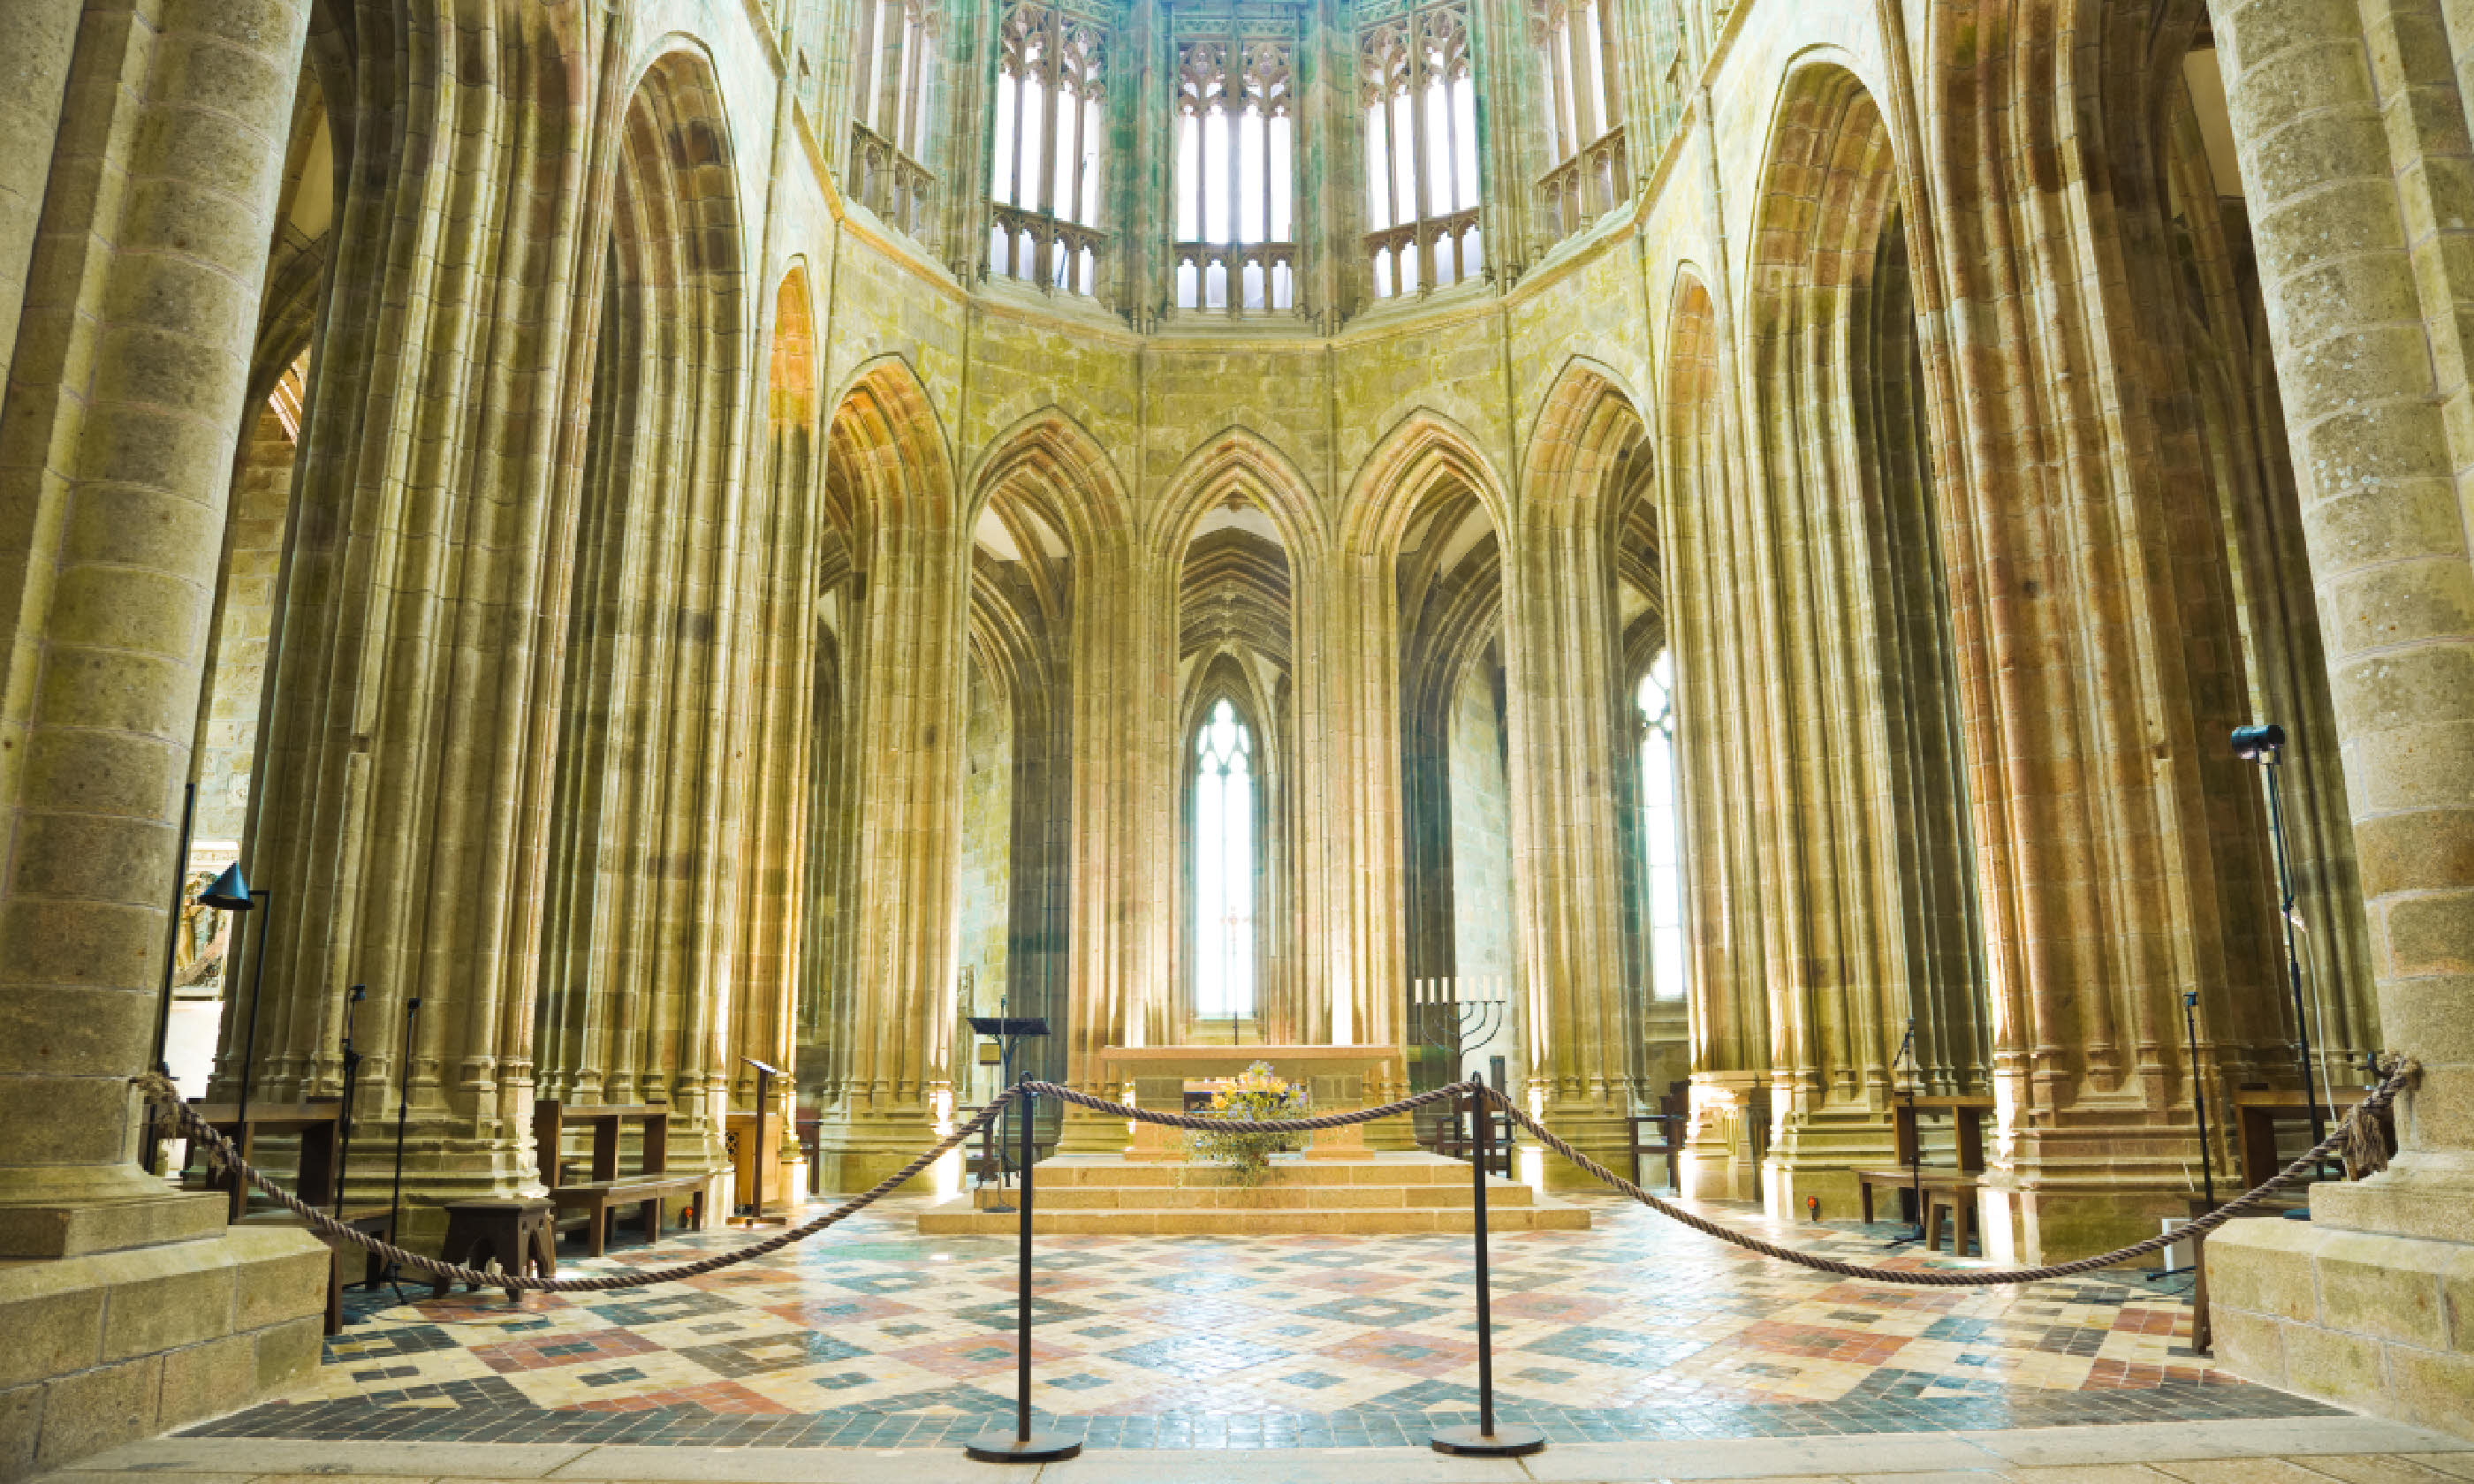 Inside the Abbey of Mont Saint Michel (Shutterstock)